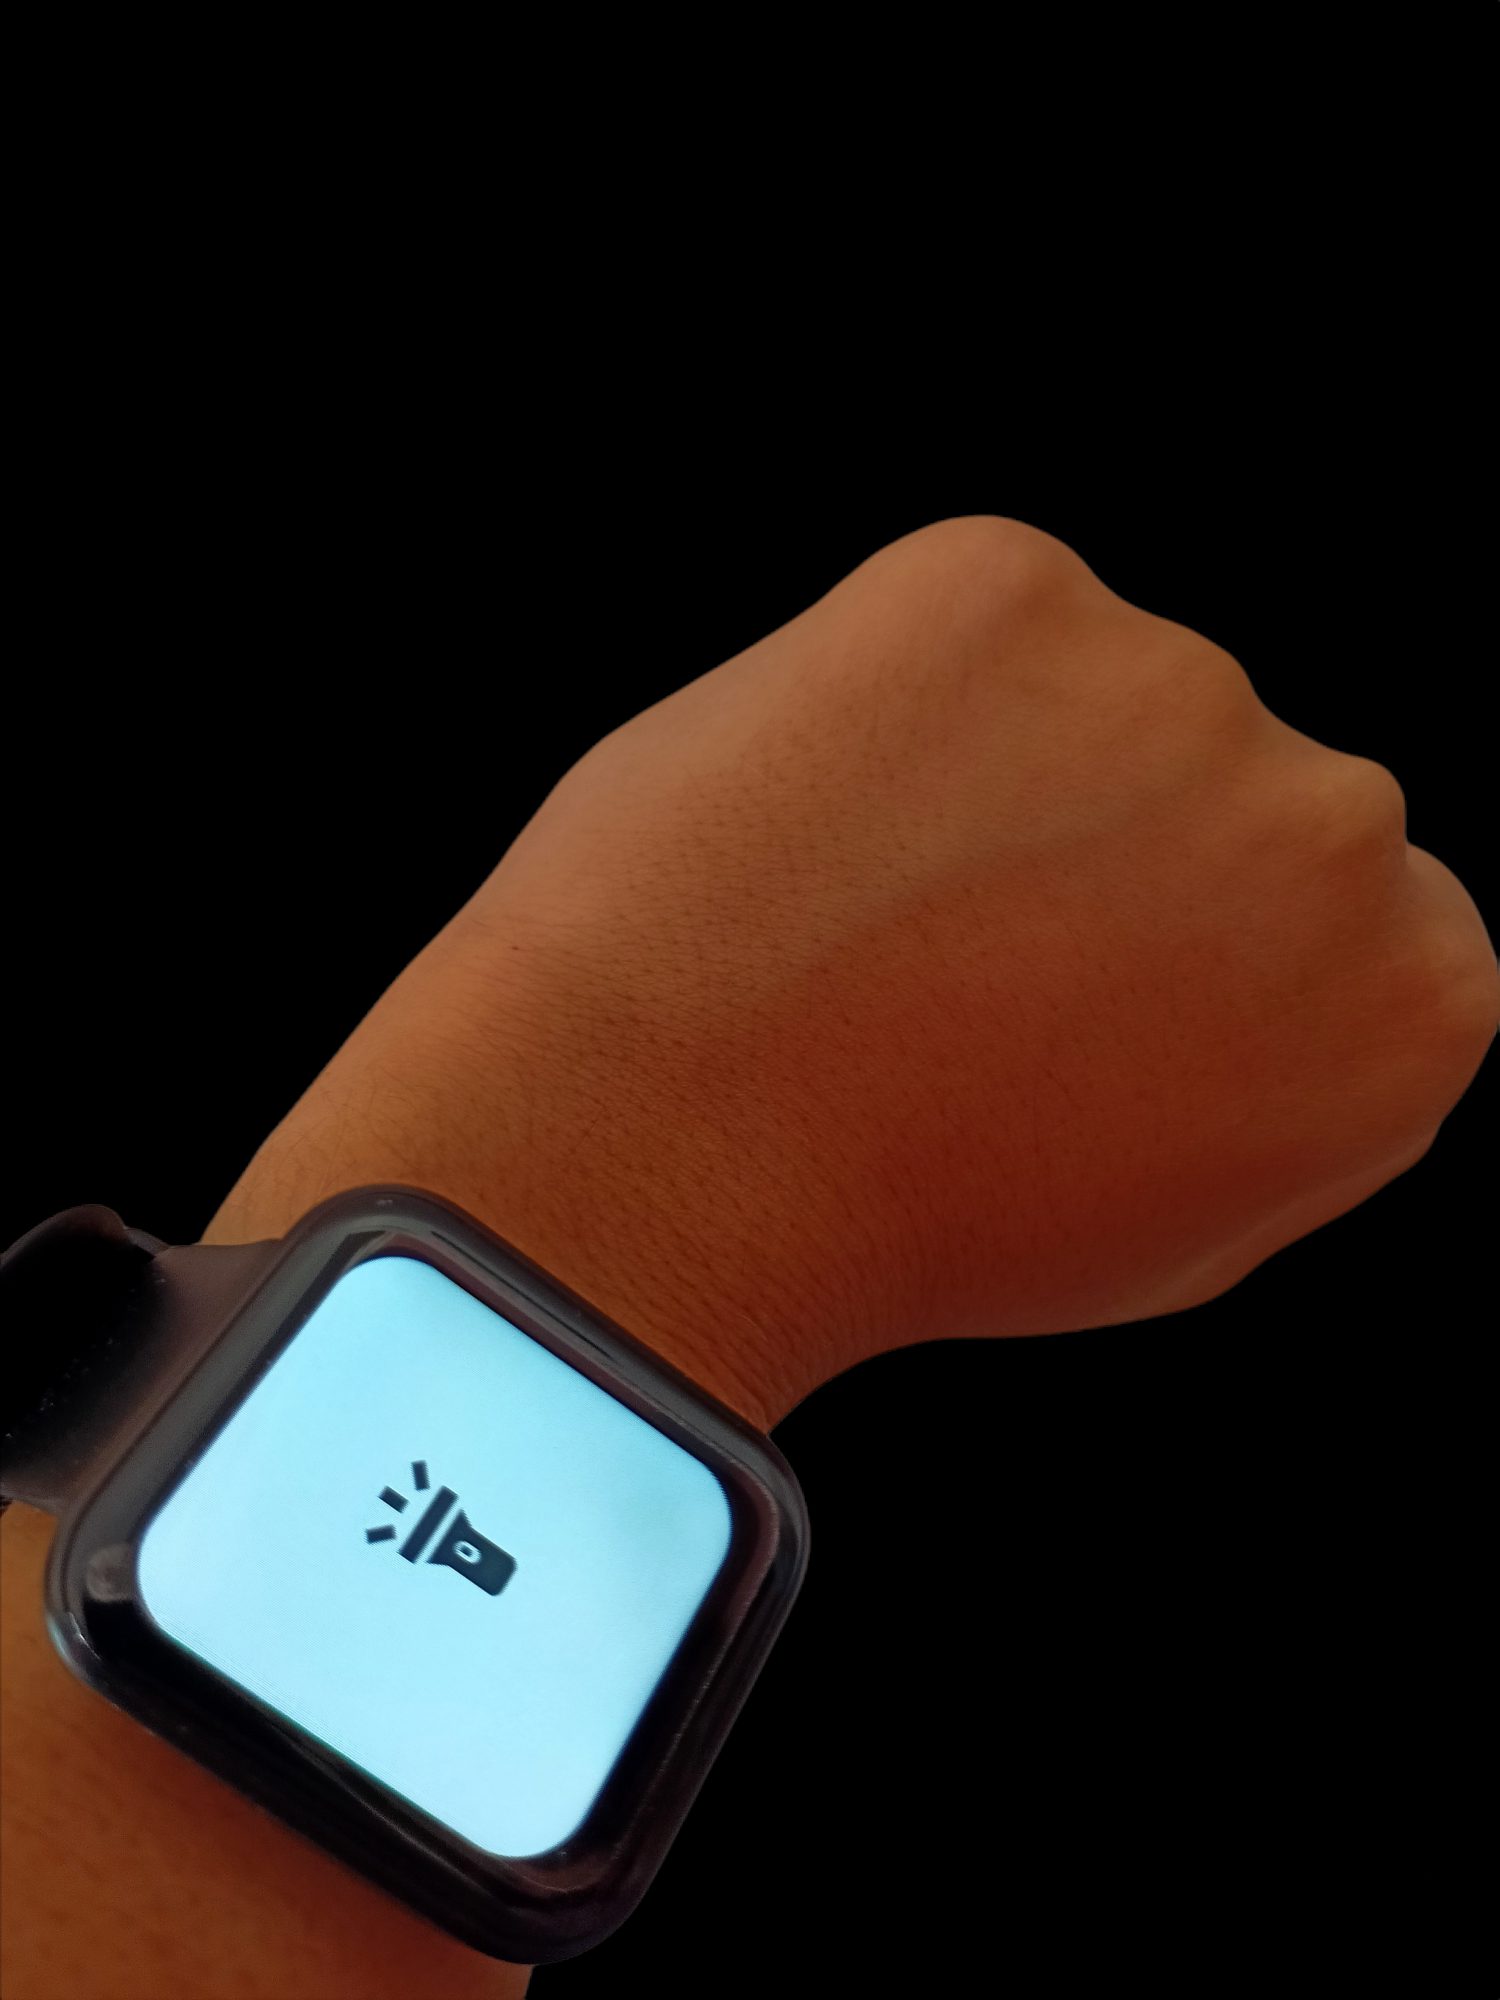 Le nostre impressioni su Misirun Smartwatch Fitness